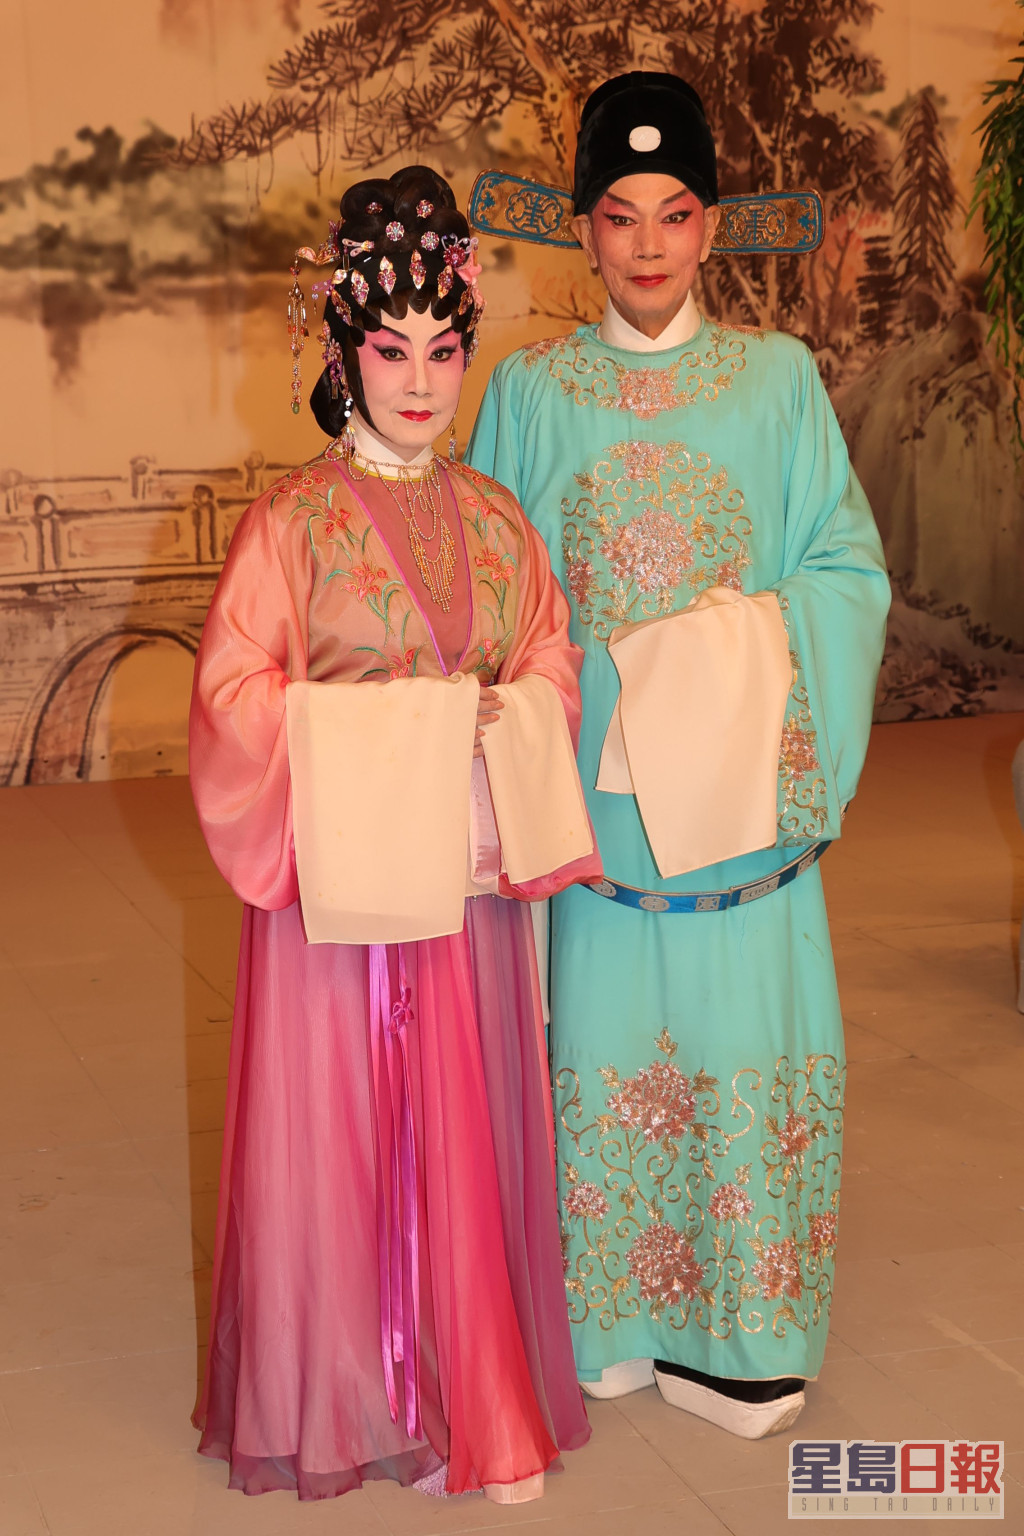 兩人為《歡樂滿東華2022》錄影粵劇折子戲《紫釵記之陽關折柳》。